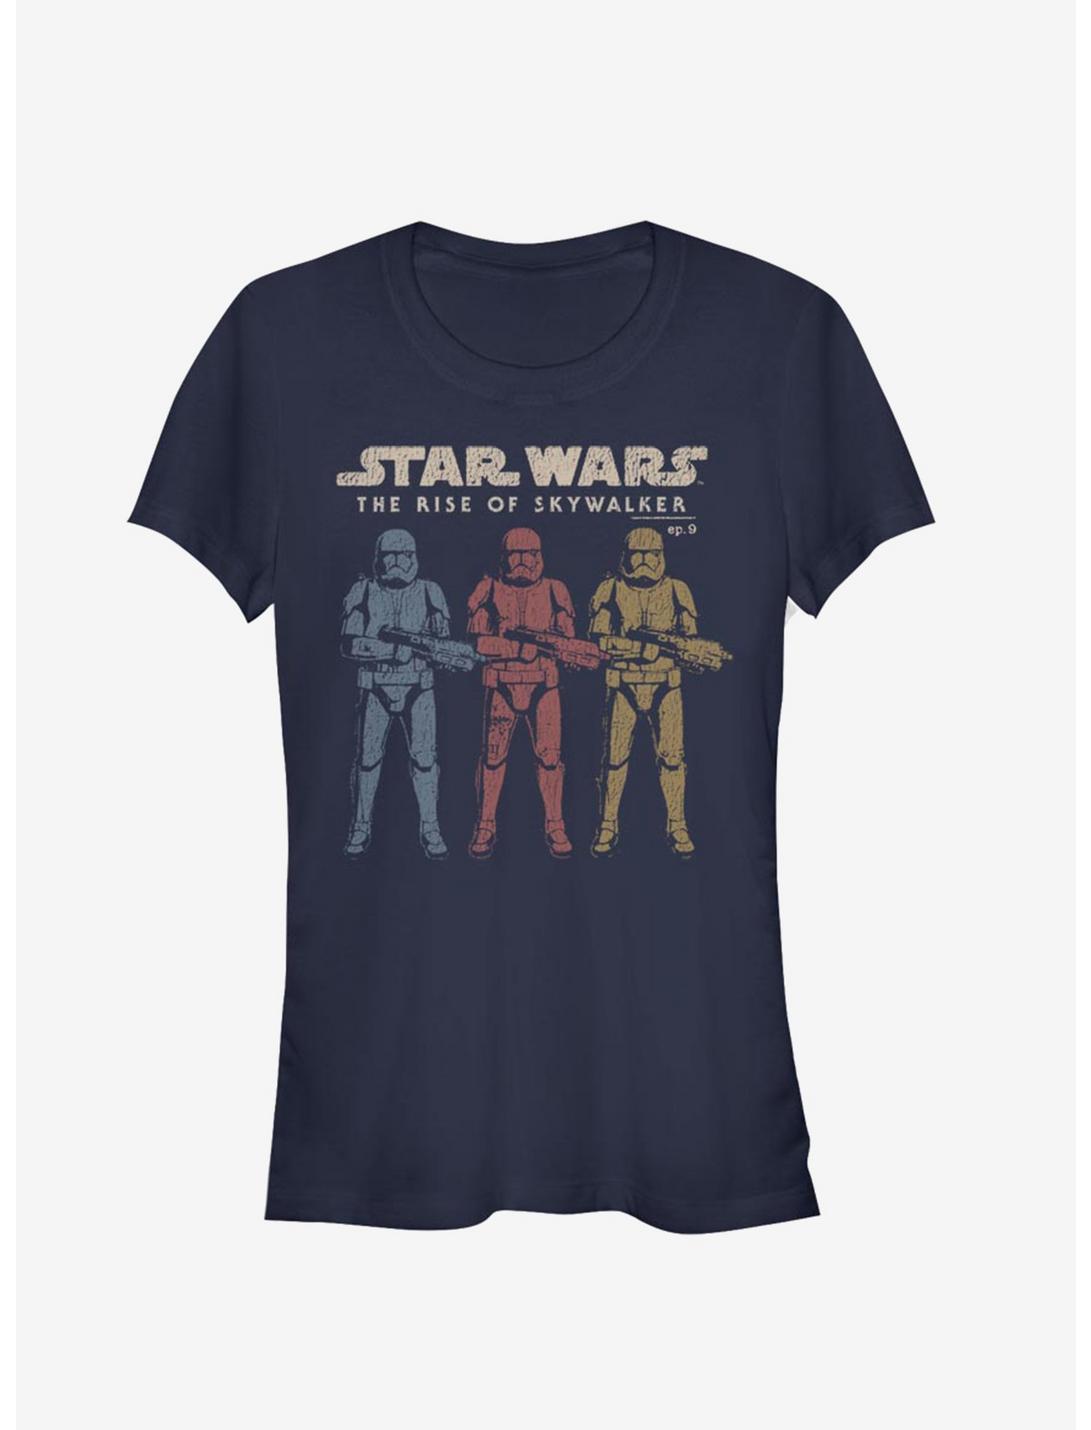 Star Wars Episode IX The Rise Of Skywalker Color Guards Girls T-Shirt, NAVY, hi-res